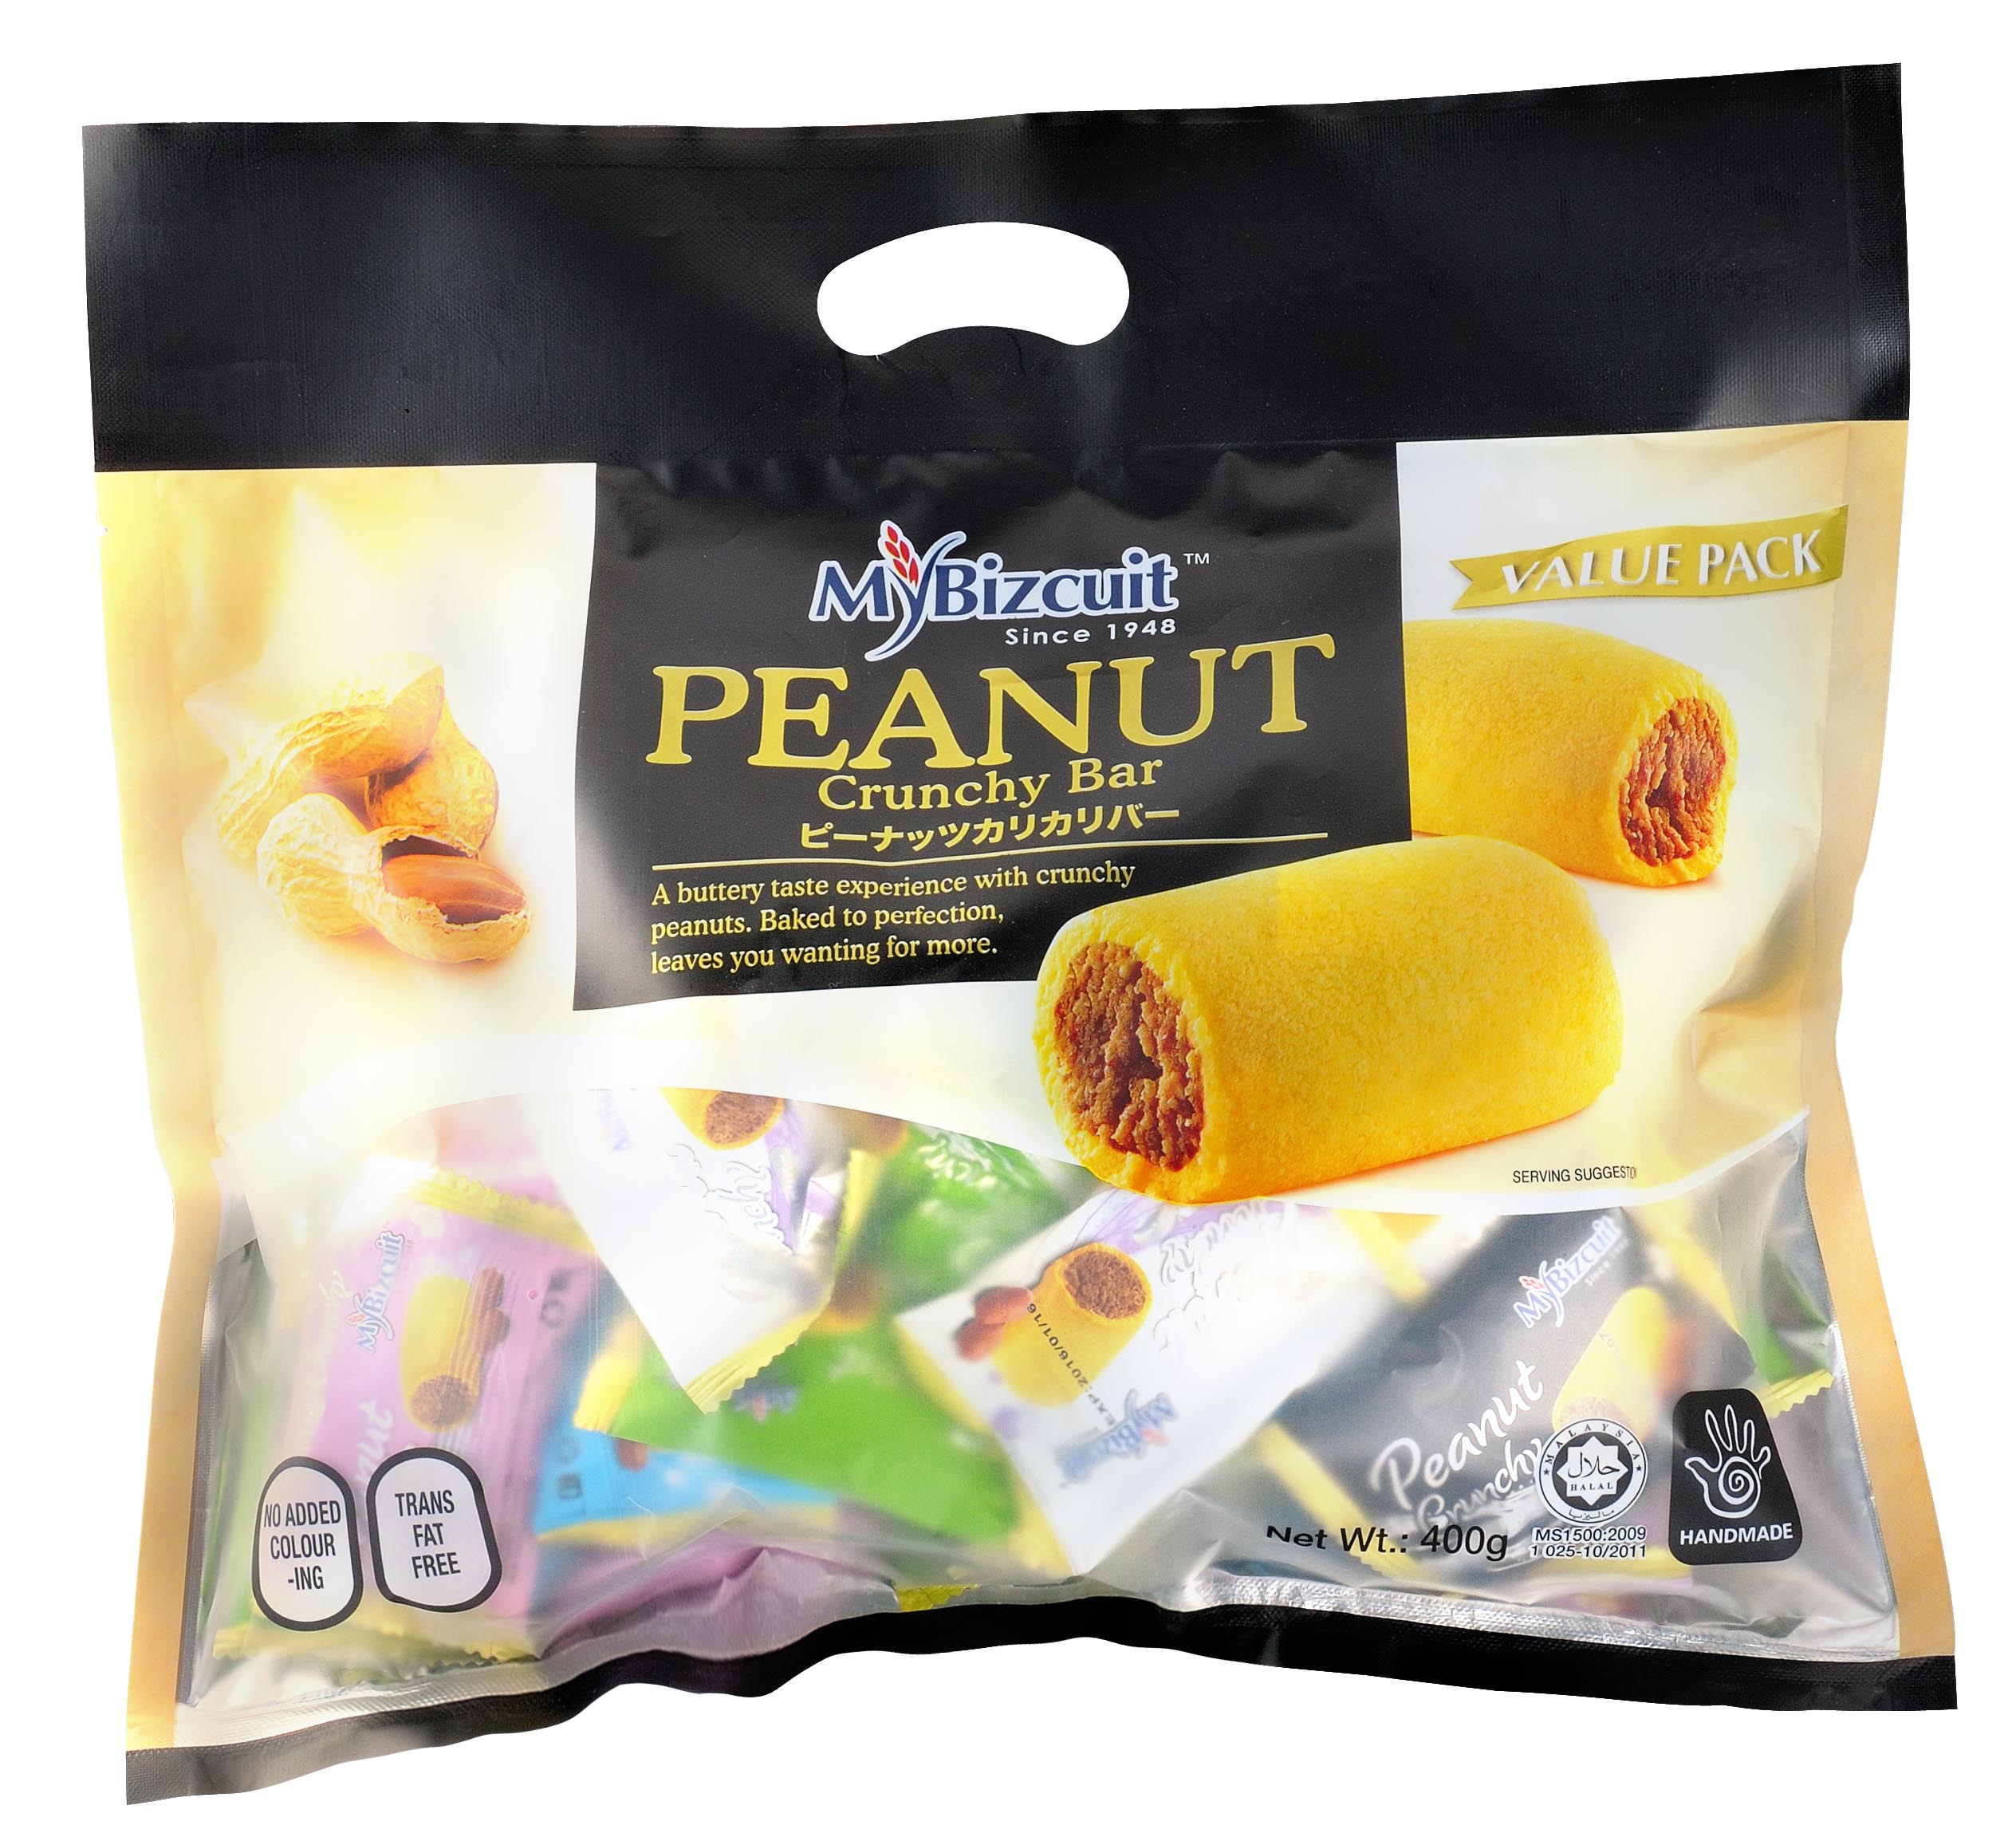 VP 03 - Peanut Crunchy Bar (24 Units Per Carton)